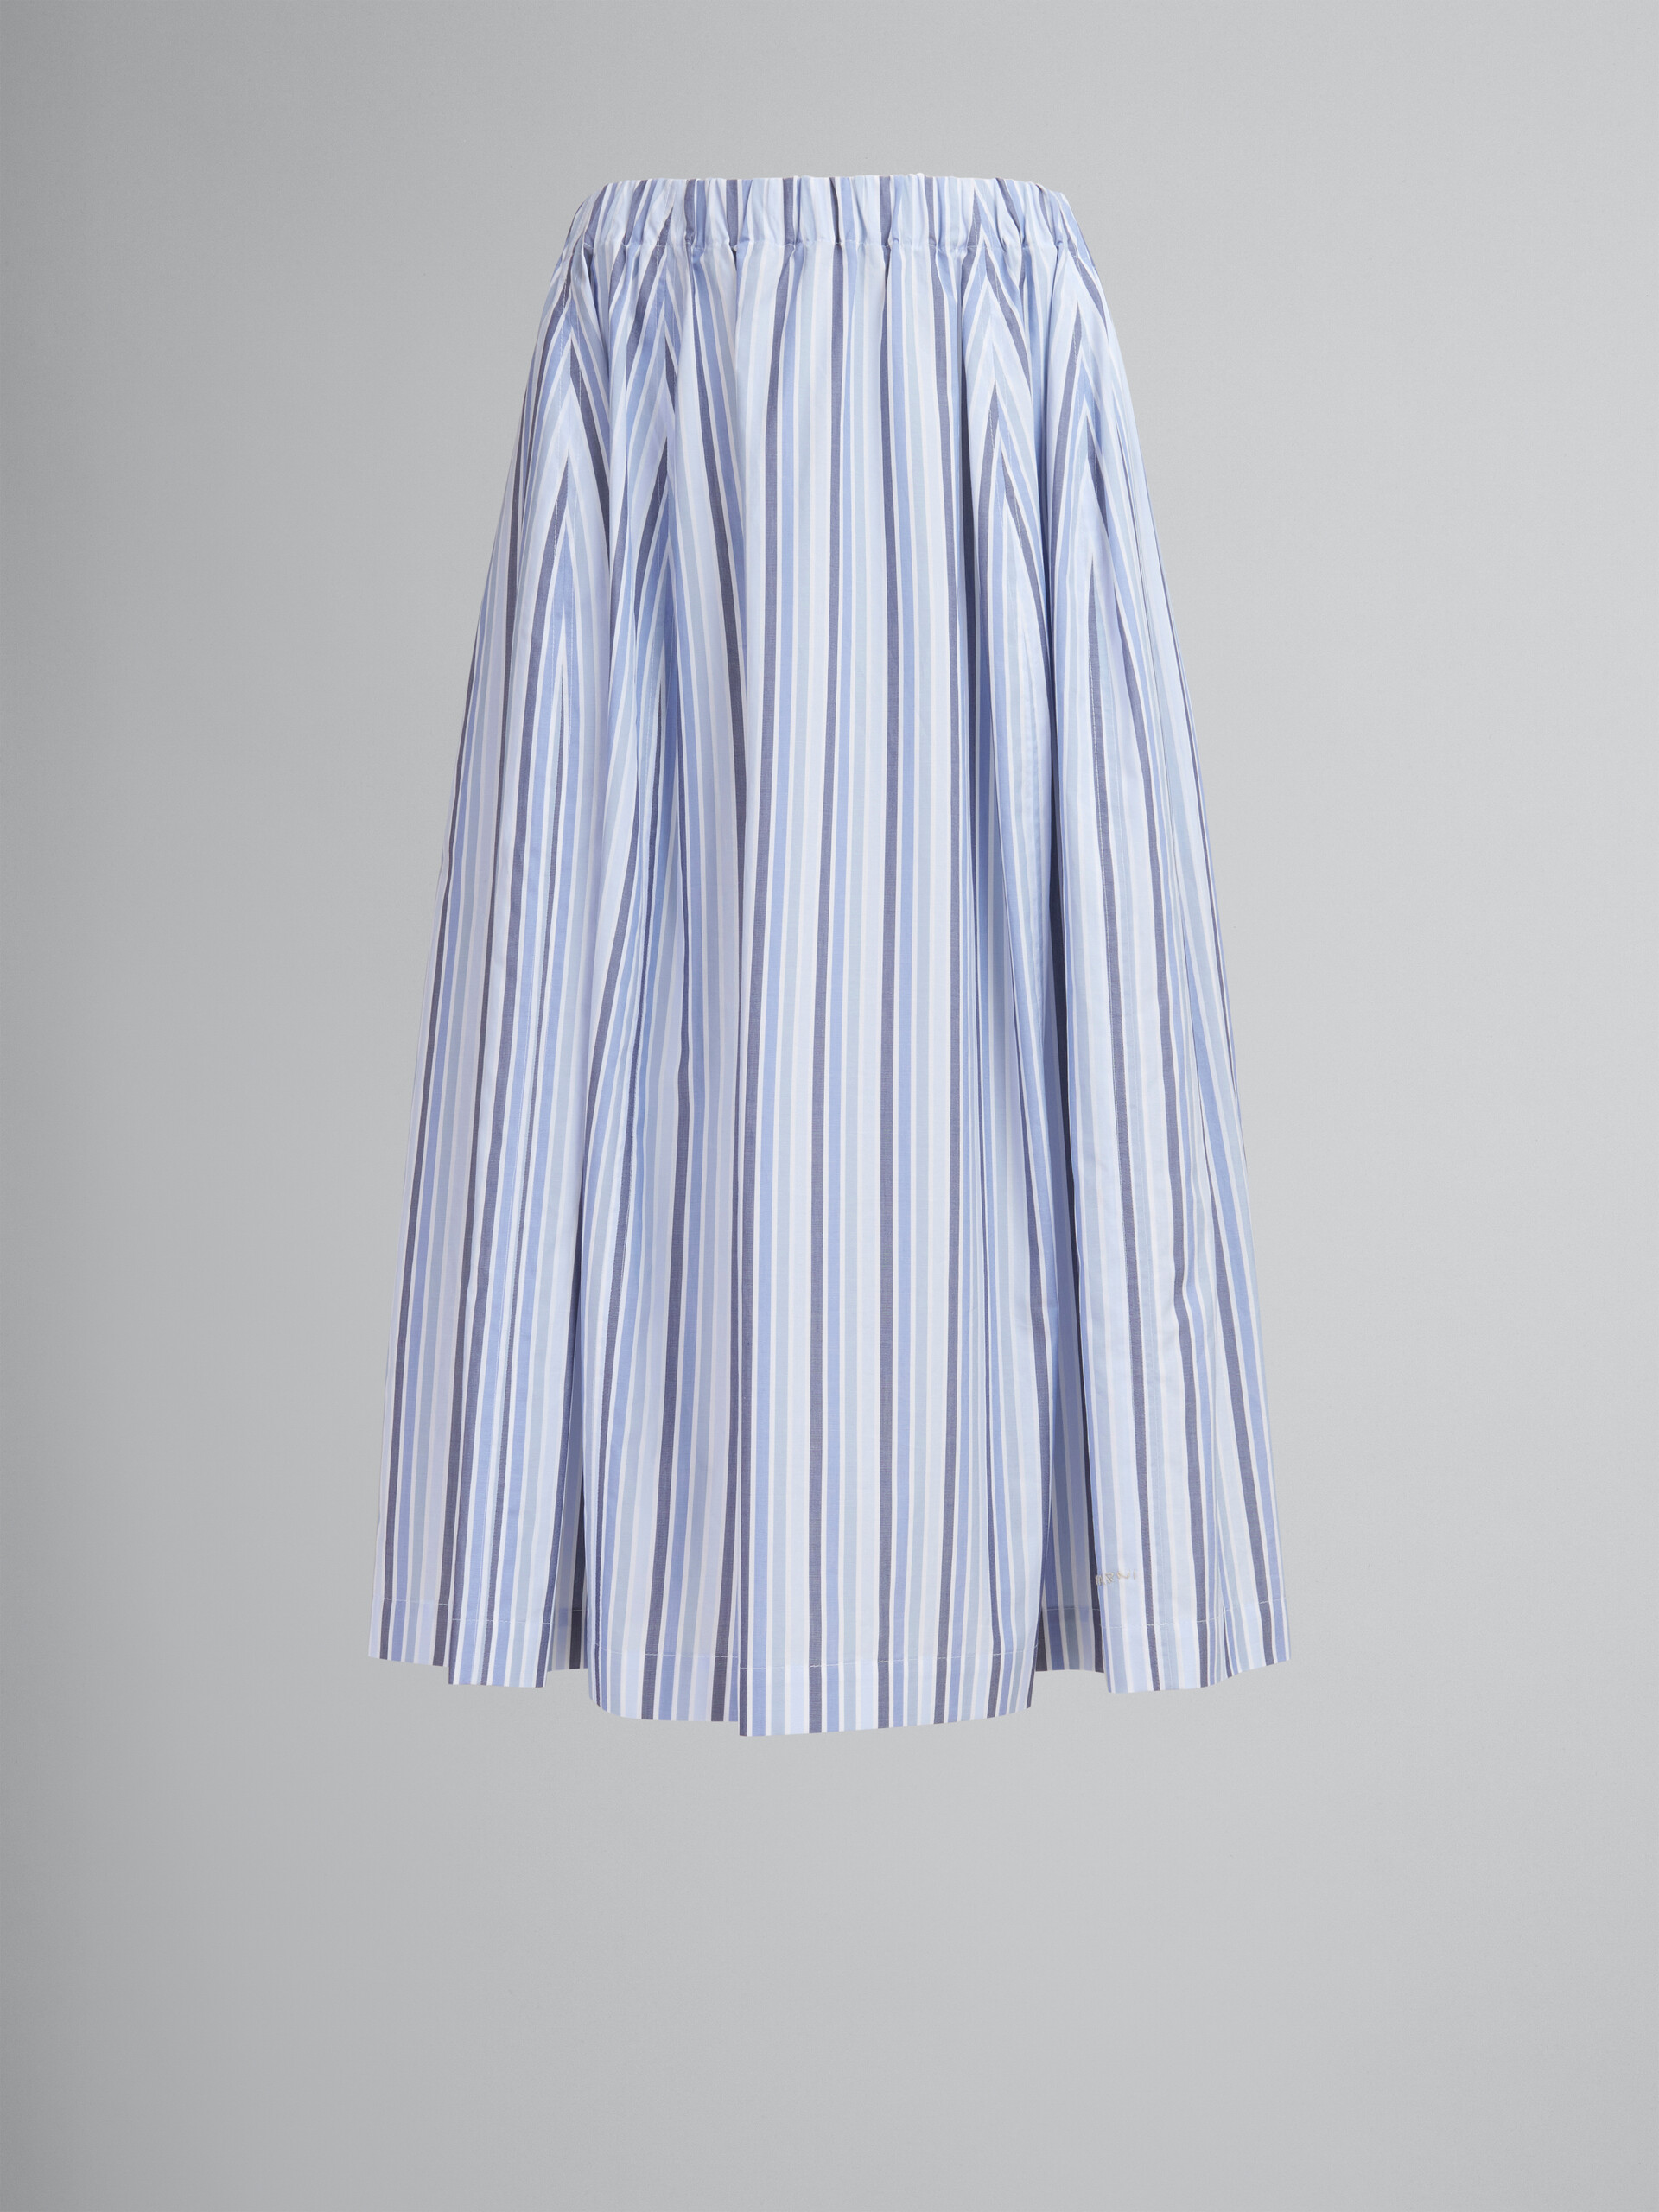 ブルー ストライプ オーガニックポプリン製  伸縮性のあるミディ丈スカート - スカート - Image 1